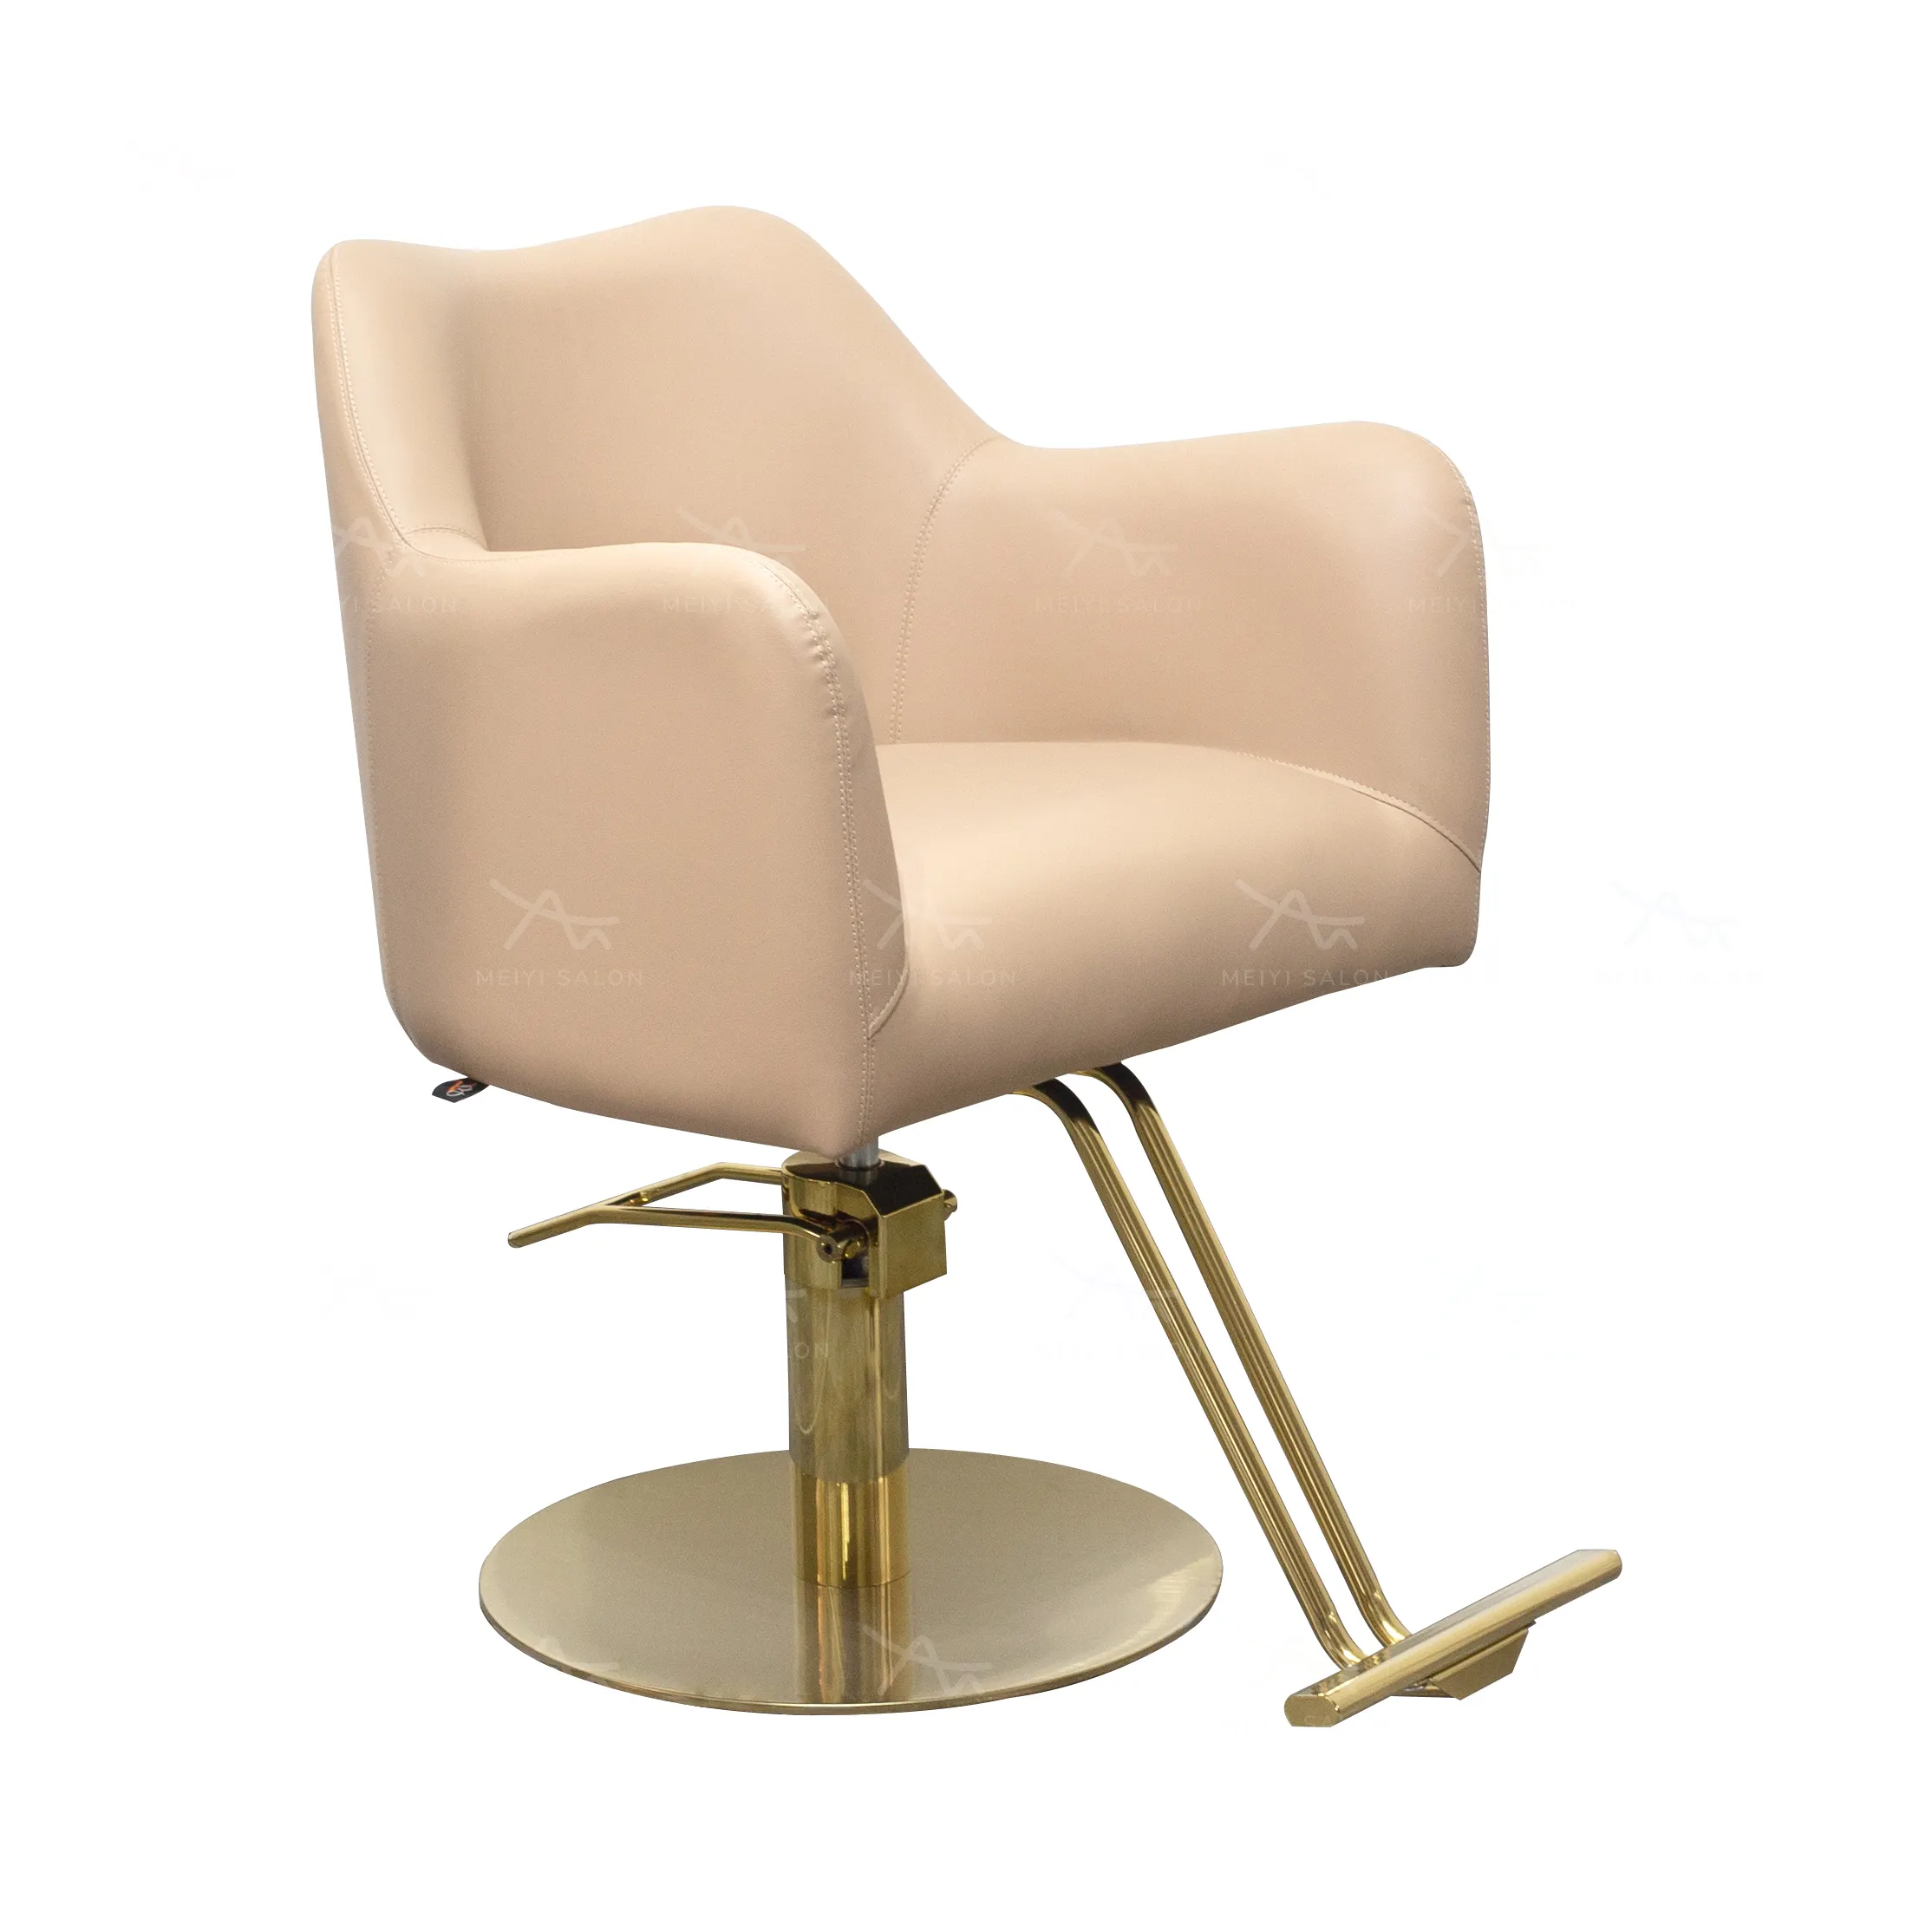 Sedia da parrucchiere Design semplice su e giù per la moderna bellezza reclinabile sedia da barbiere